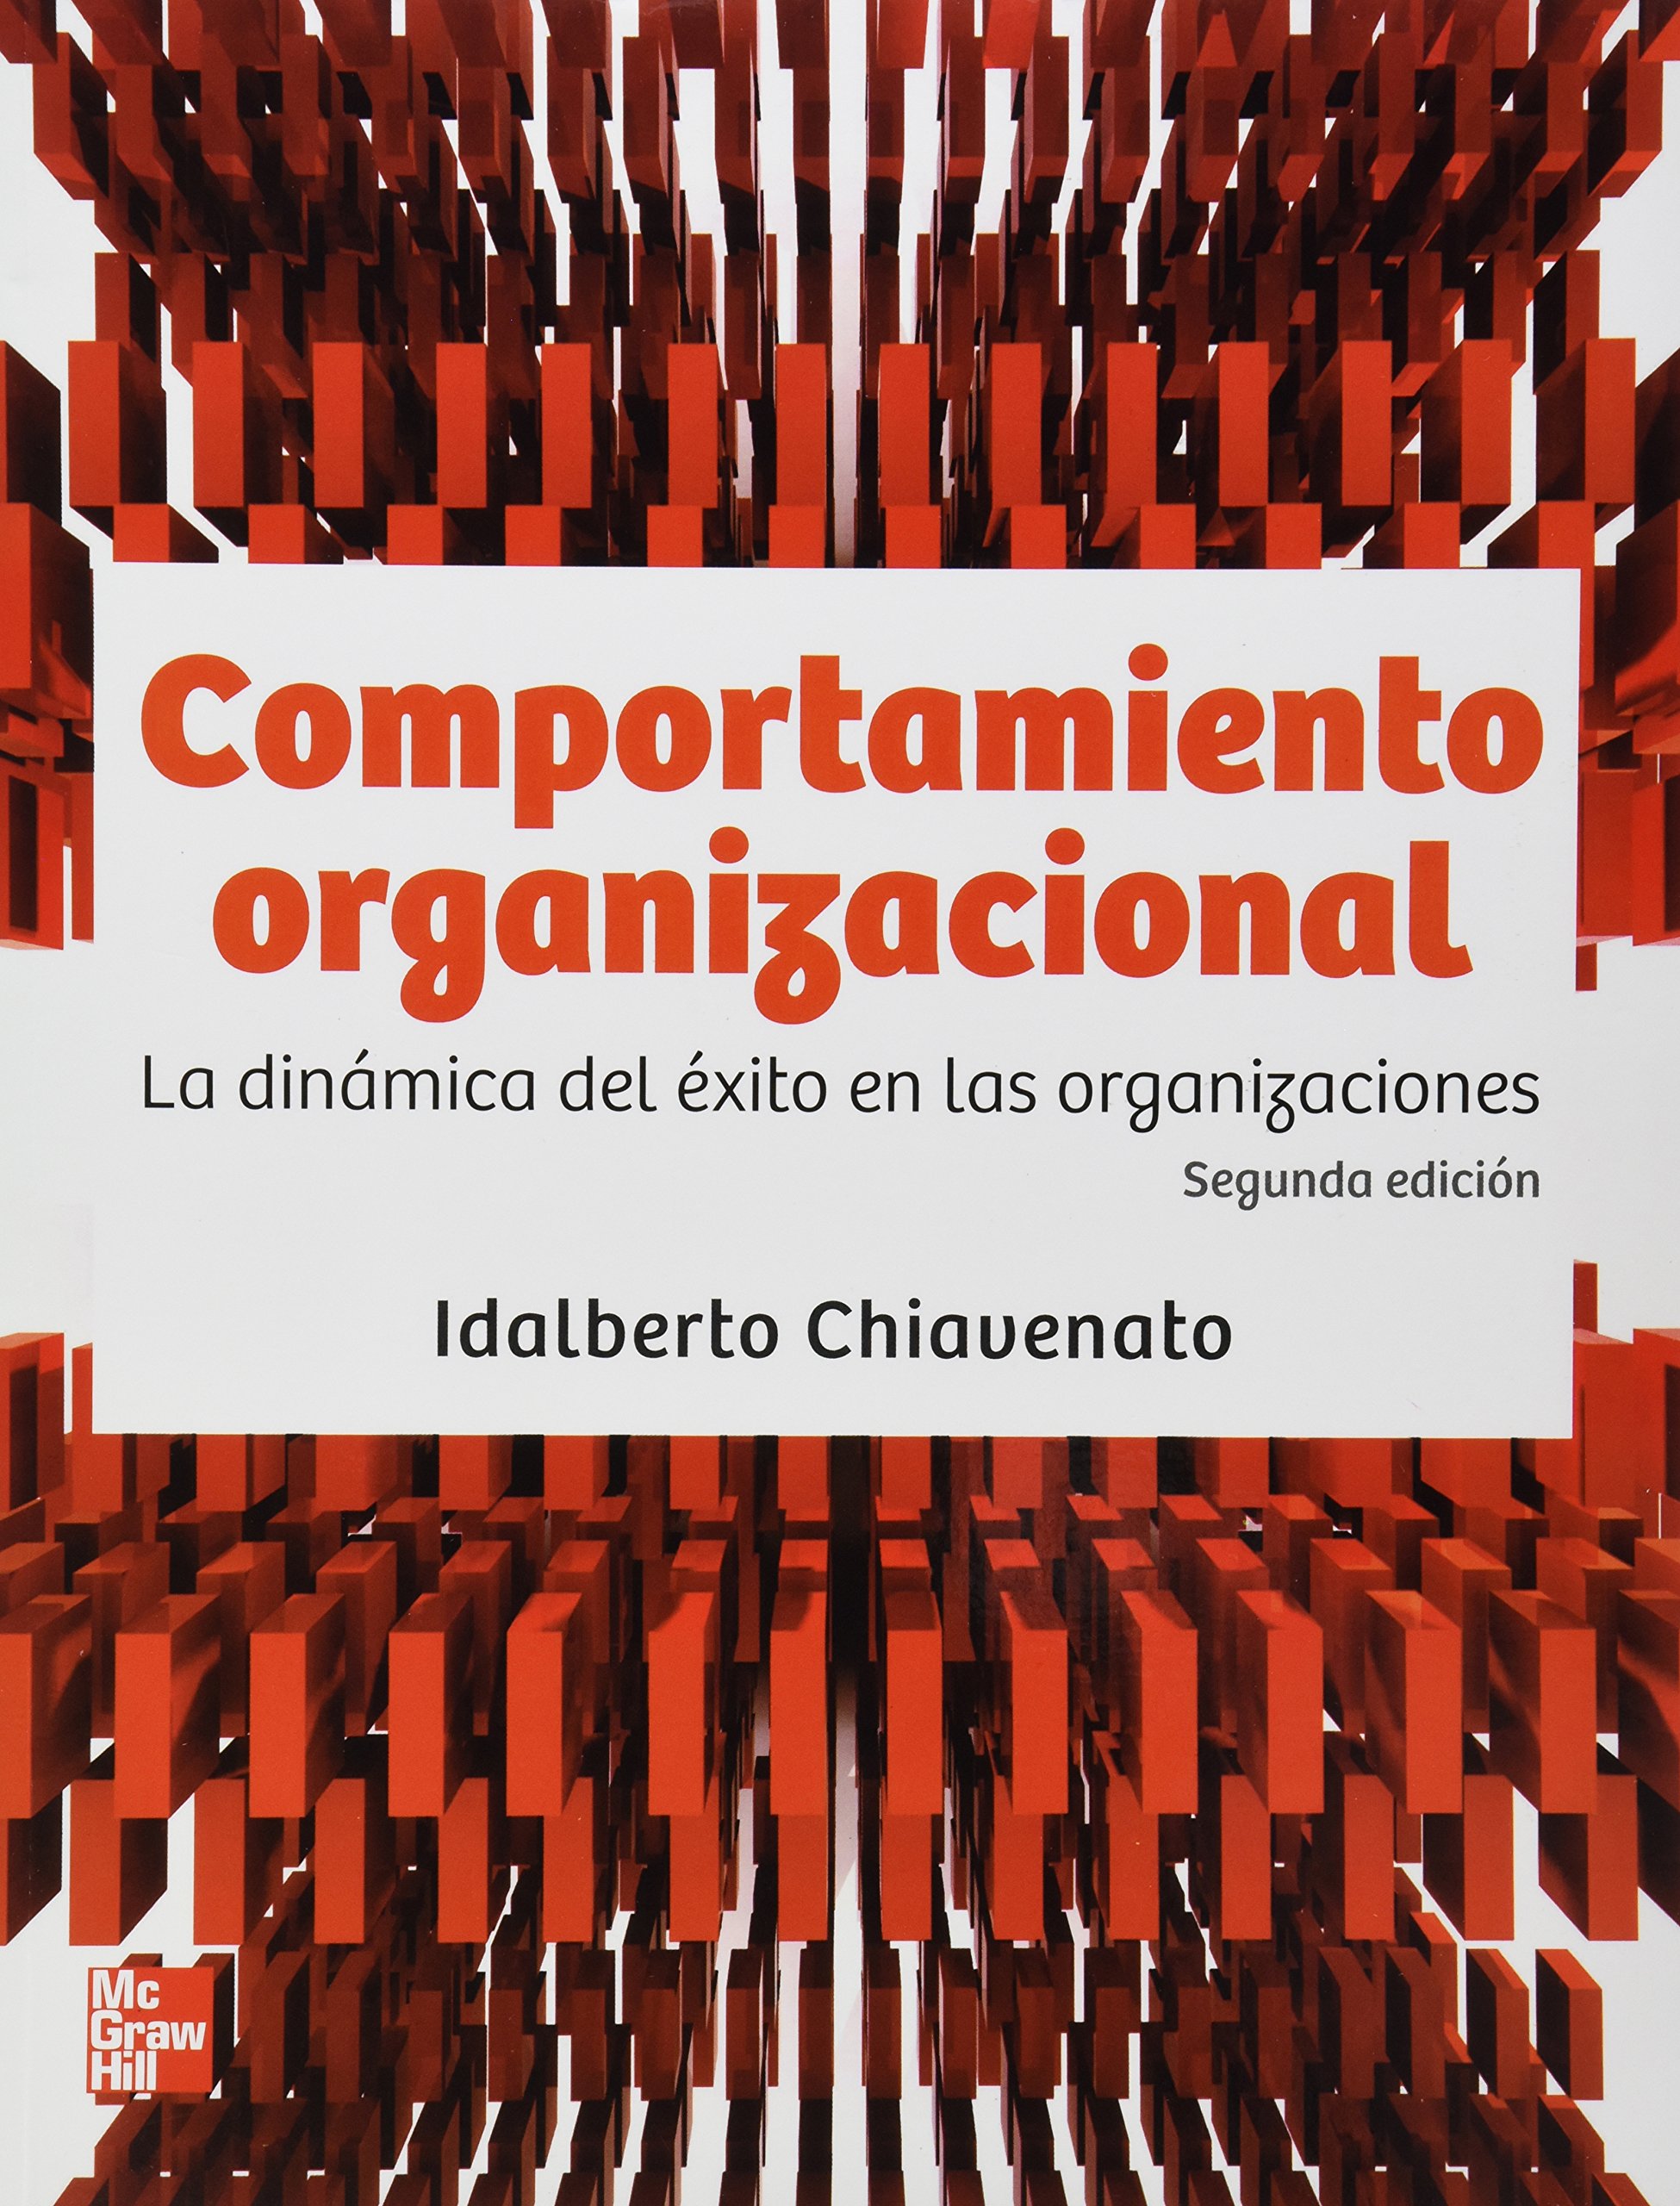 Libro Impreso-Comportamiento Organizacional , La dinámica del éxito en las organizaciones 2Ed